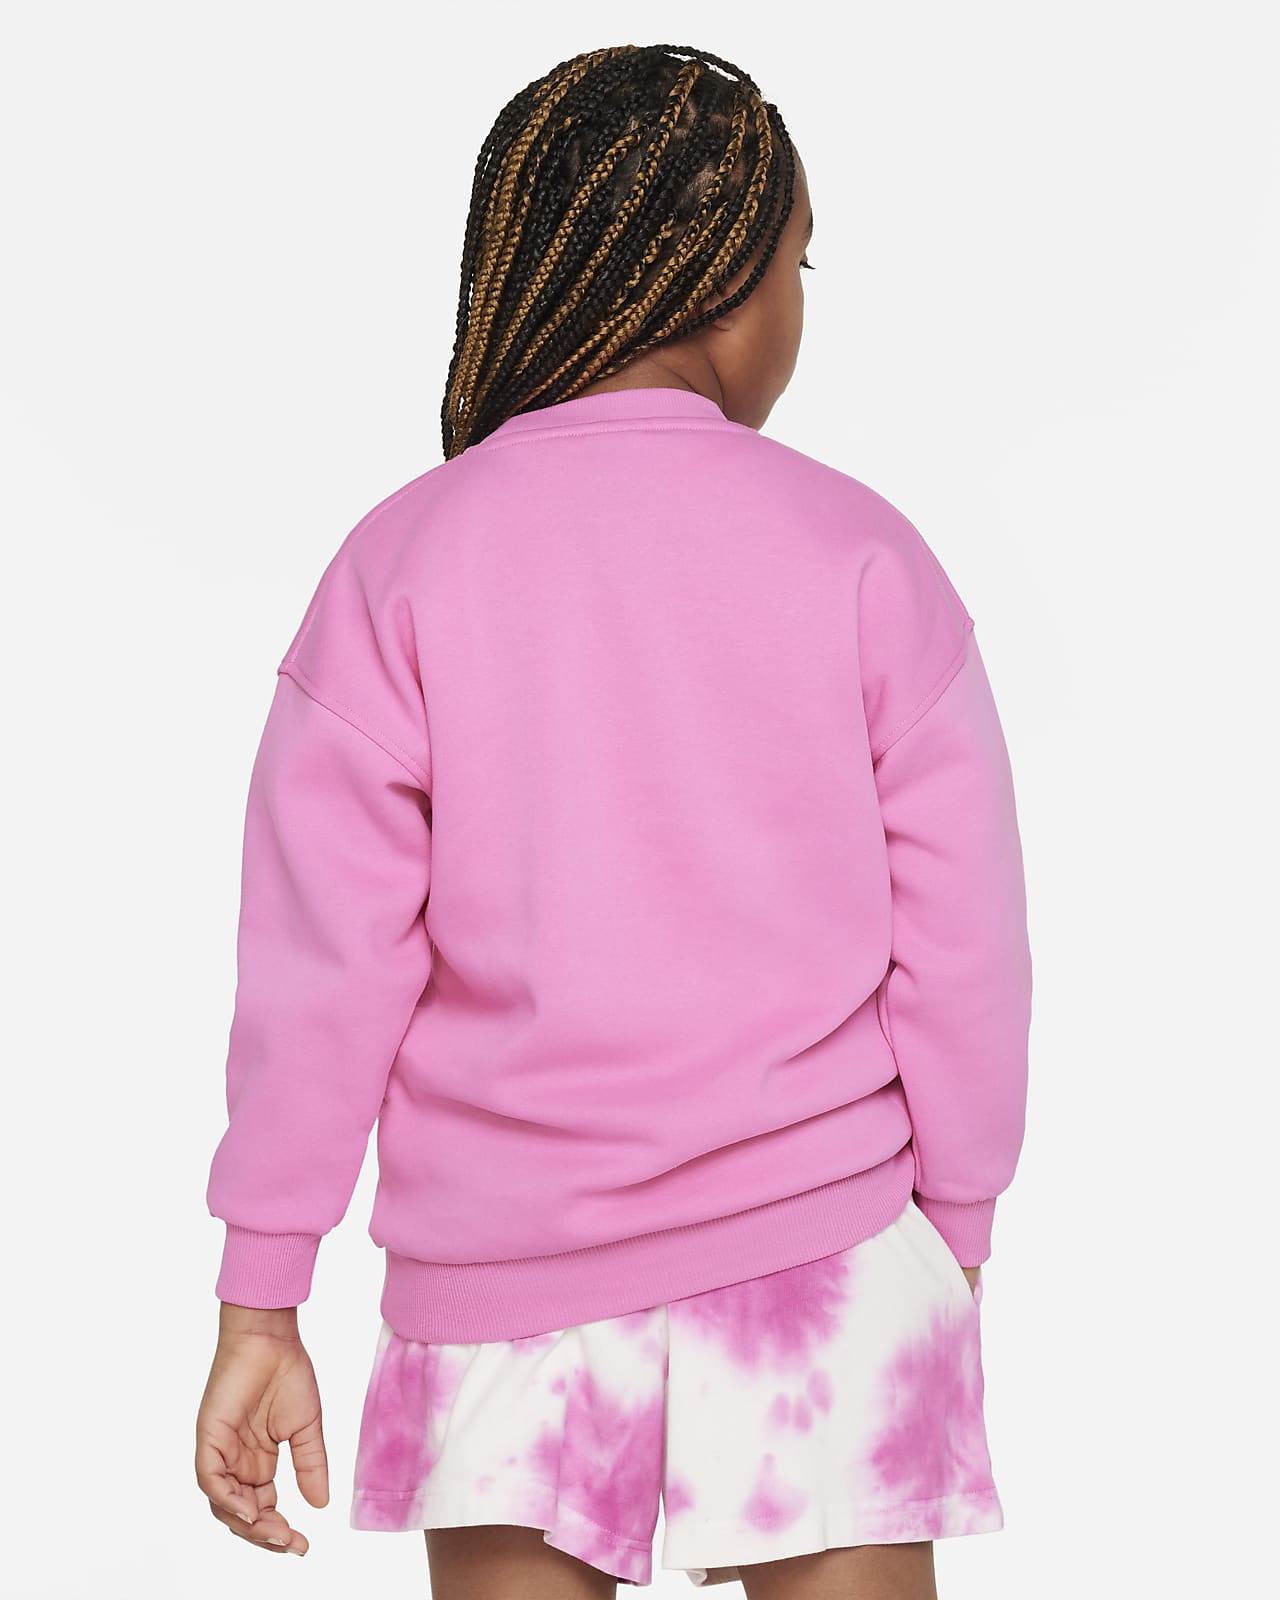 Nike Sportswear Club Fleece Older Kids' (Girls') Oversized Sweatshirt